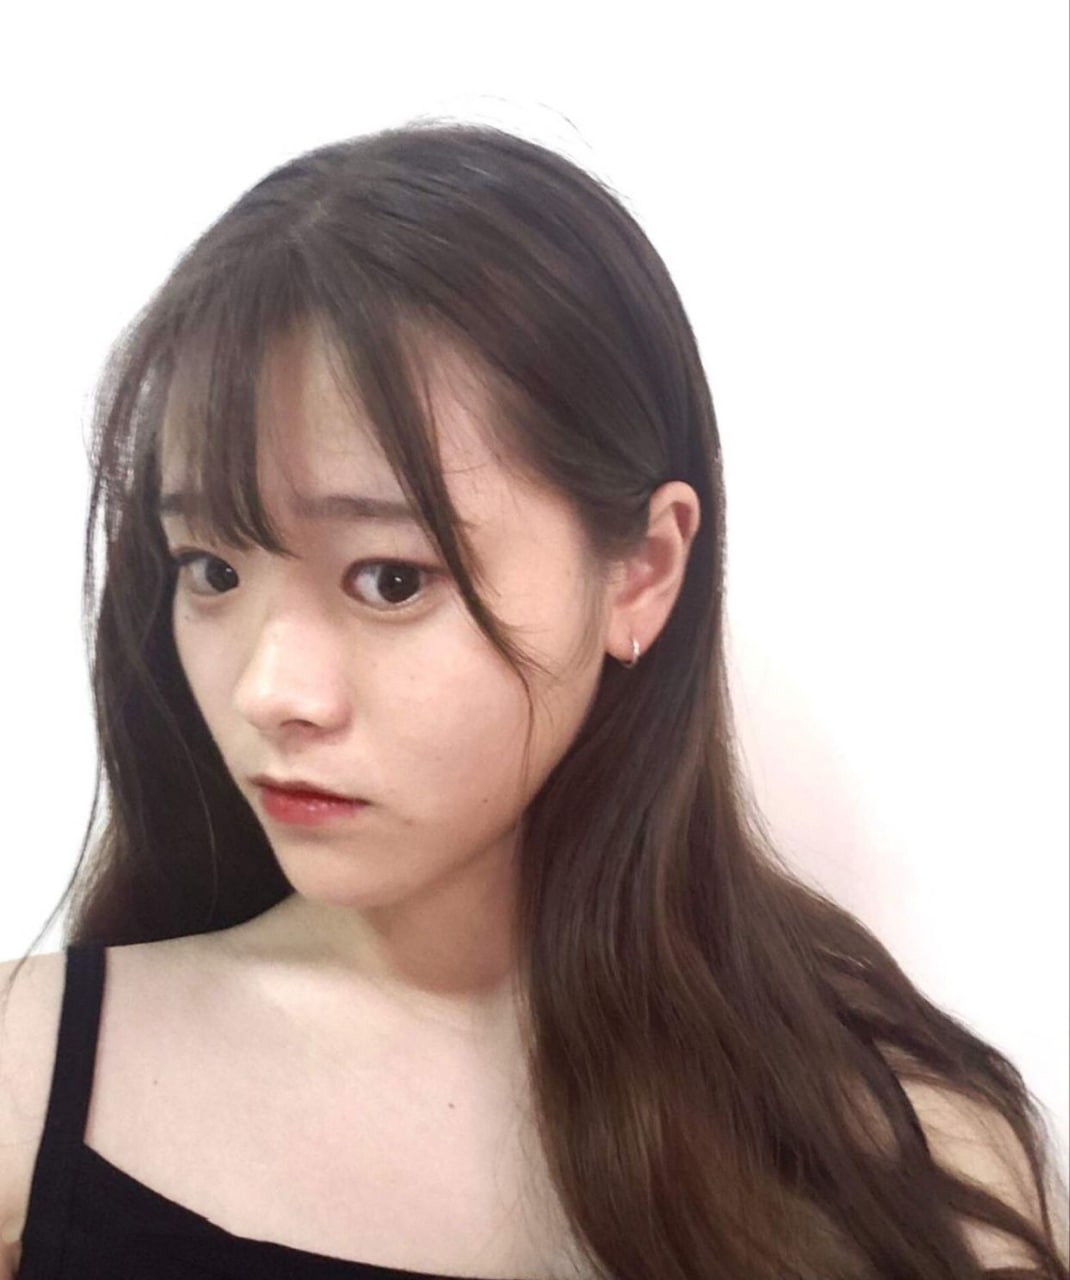 露脸美女2 7月24日更新